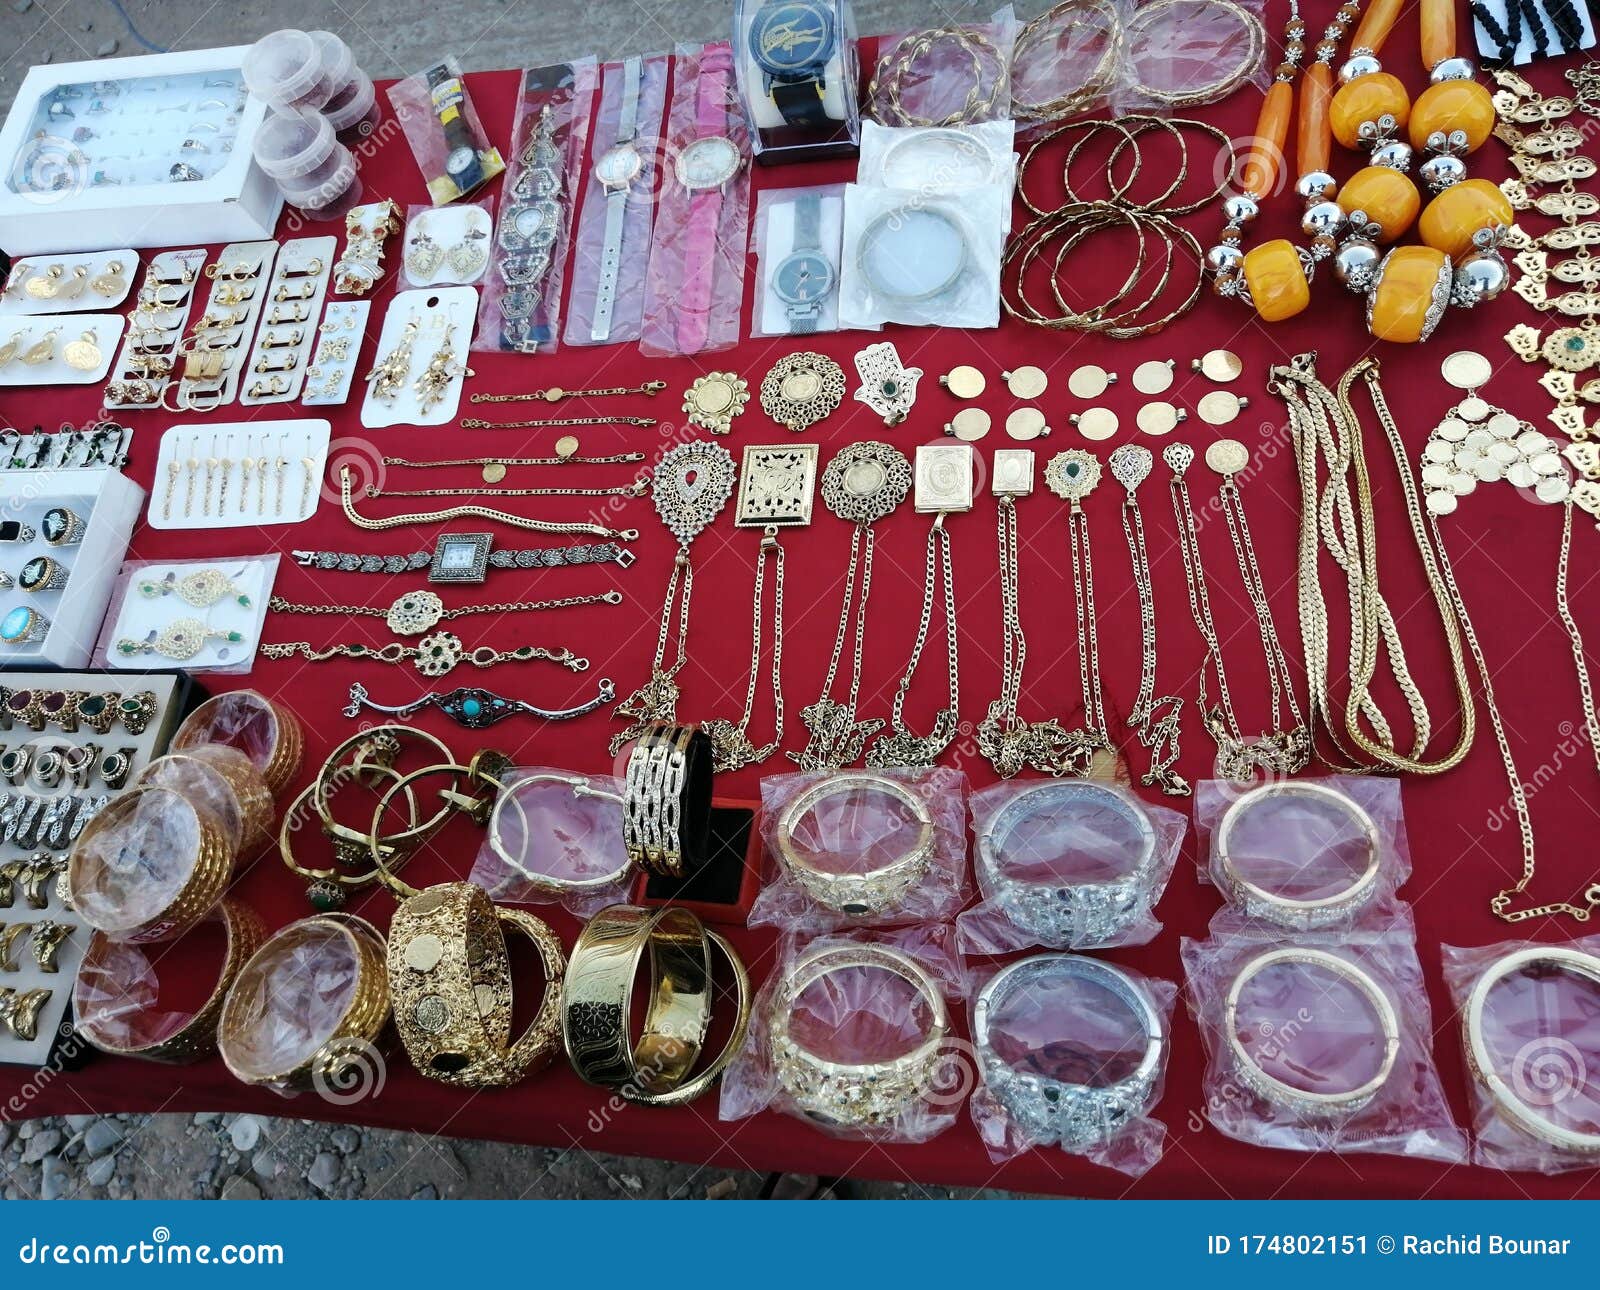 T Ontvanger verzoek Marokkaanse Traditionele Sieraden Stock Afbeelding - Image of juwelen,  vrouwen: 174802151